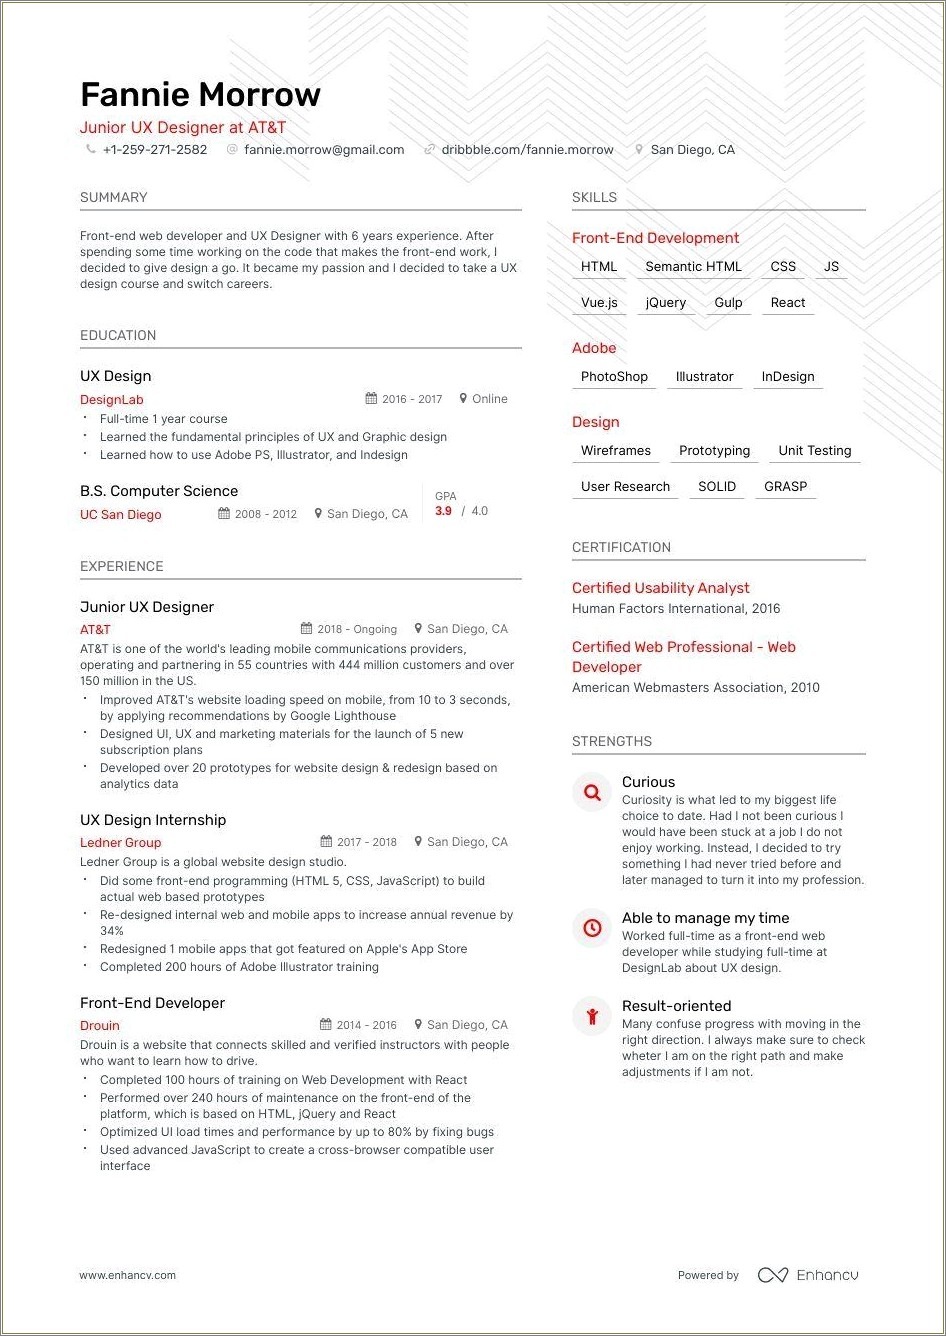 Resume Keywords For Ux Design Management